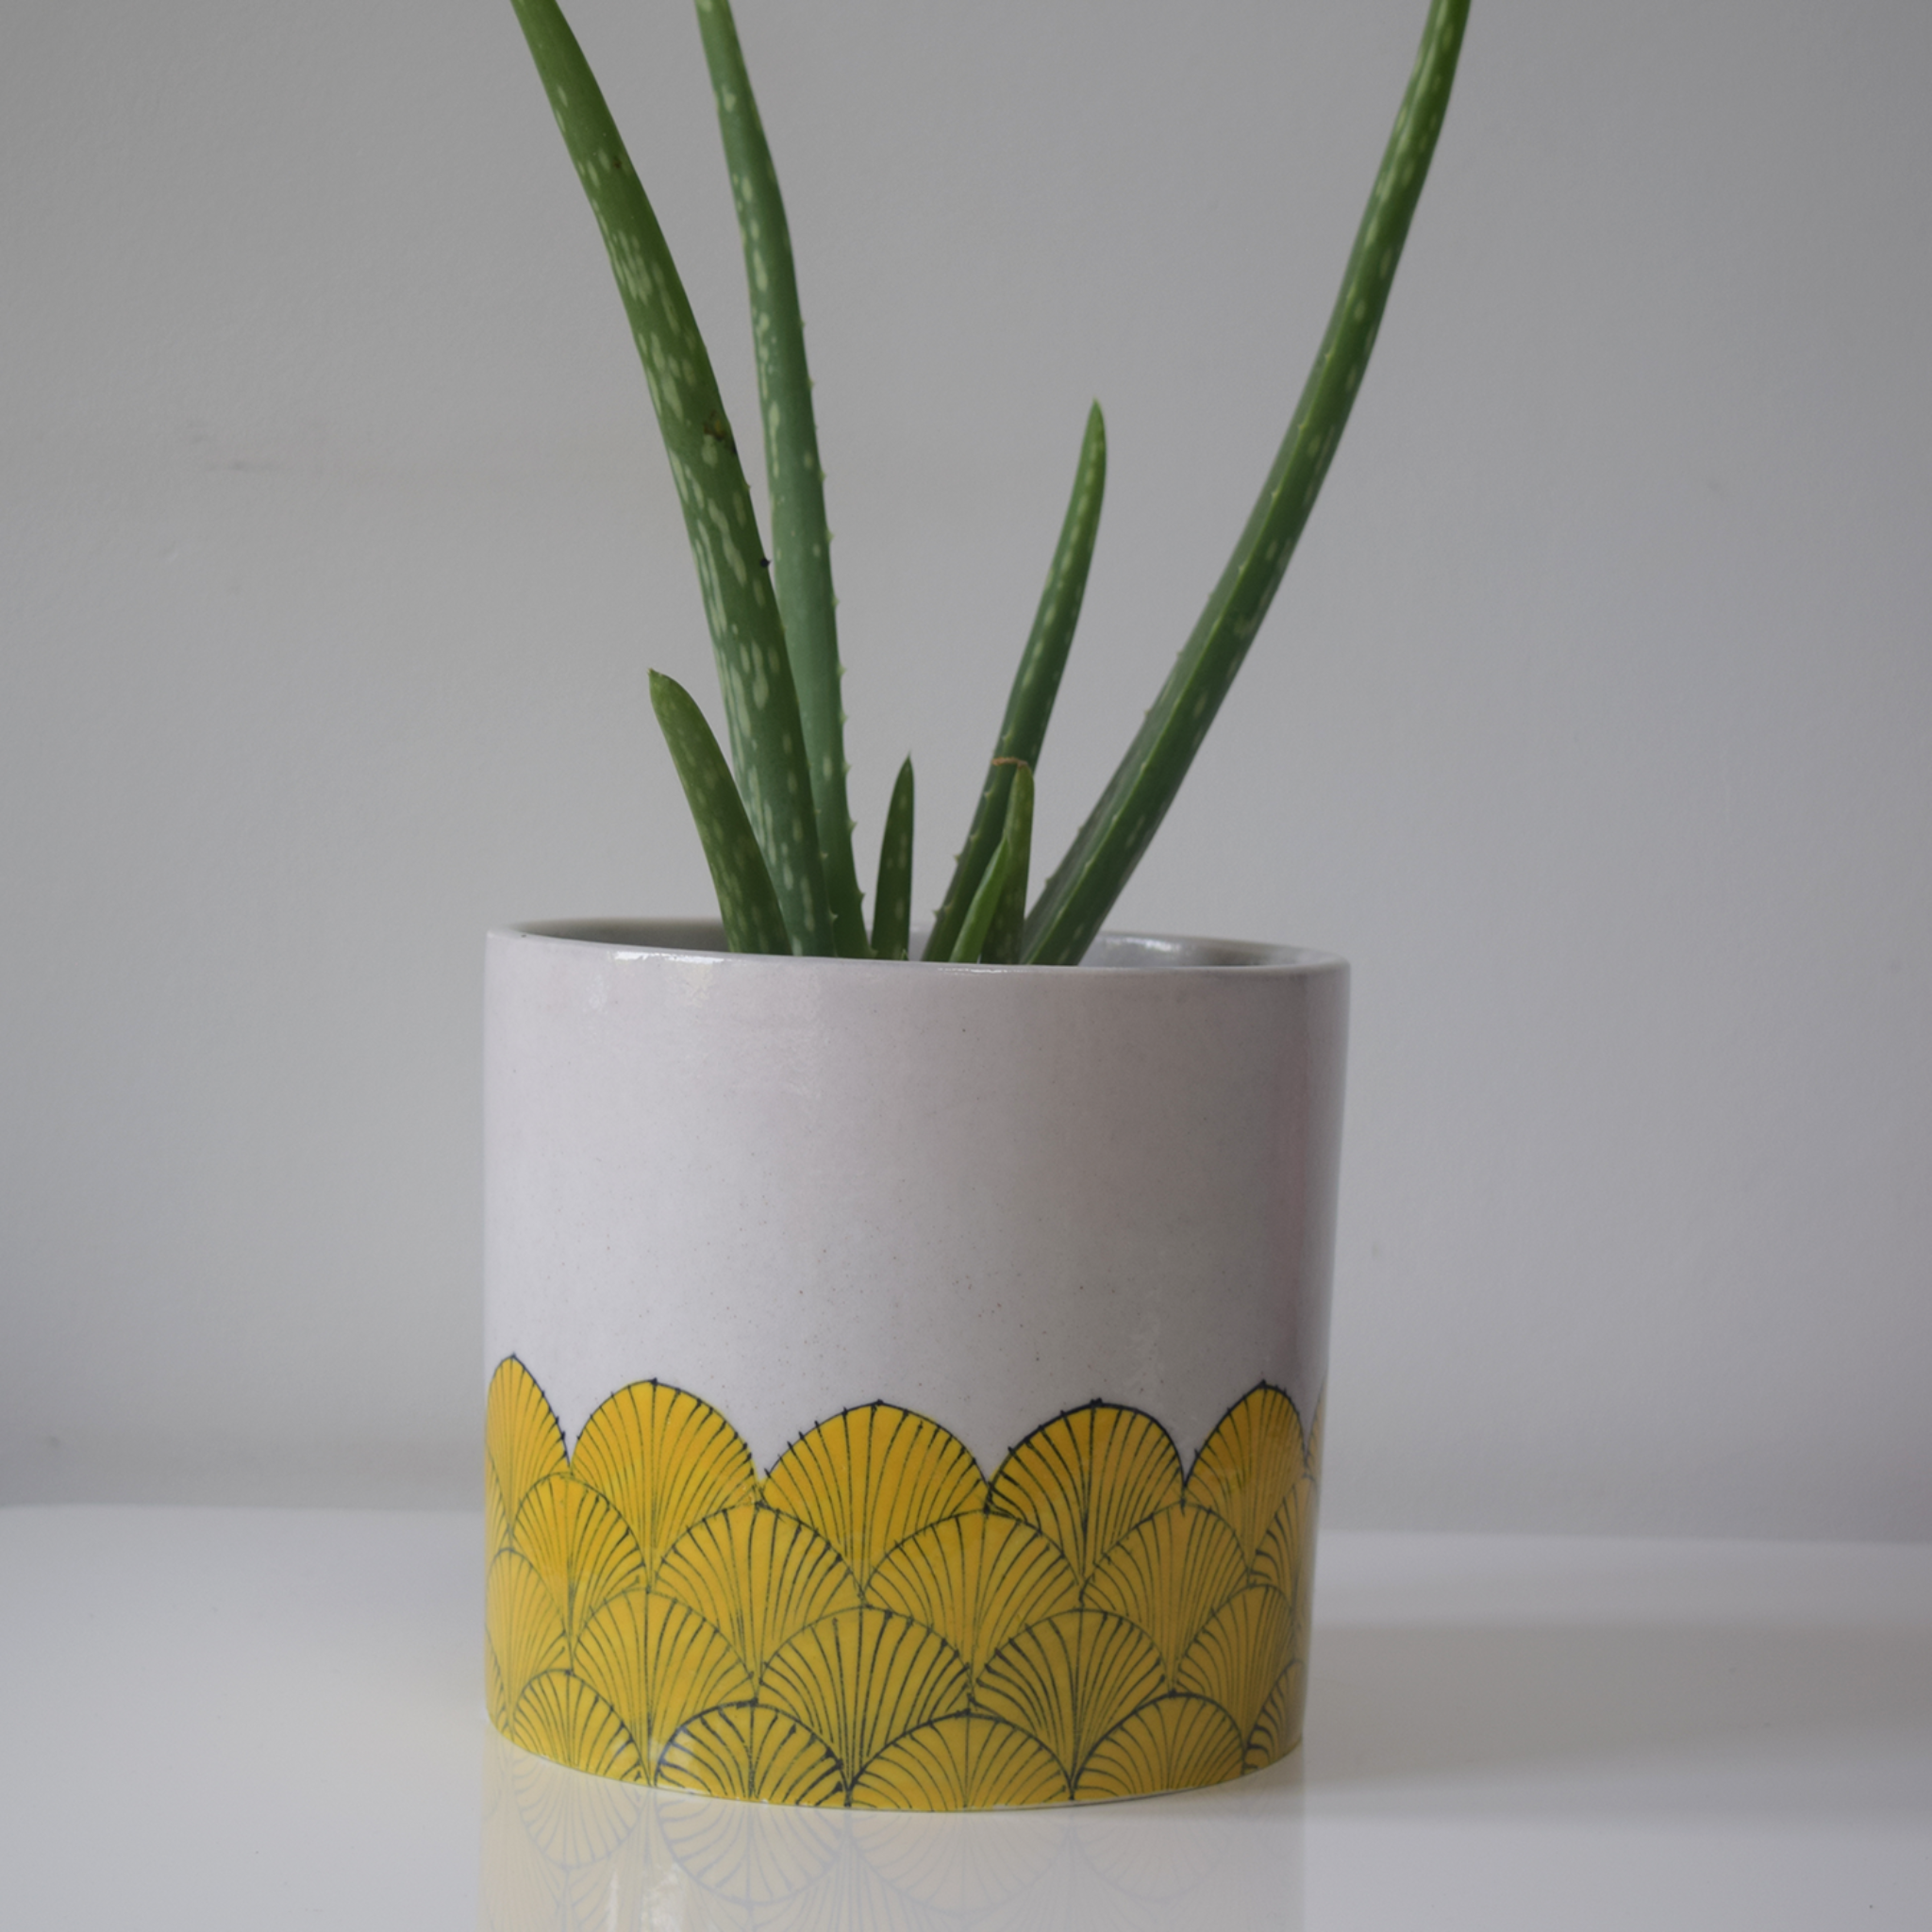 pankha, yellow and white fan patterned planter